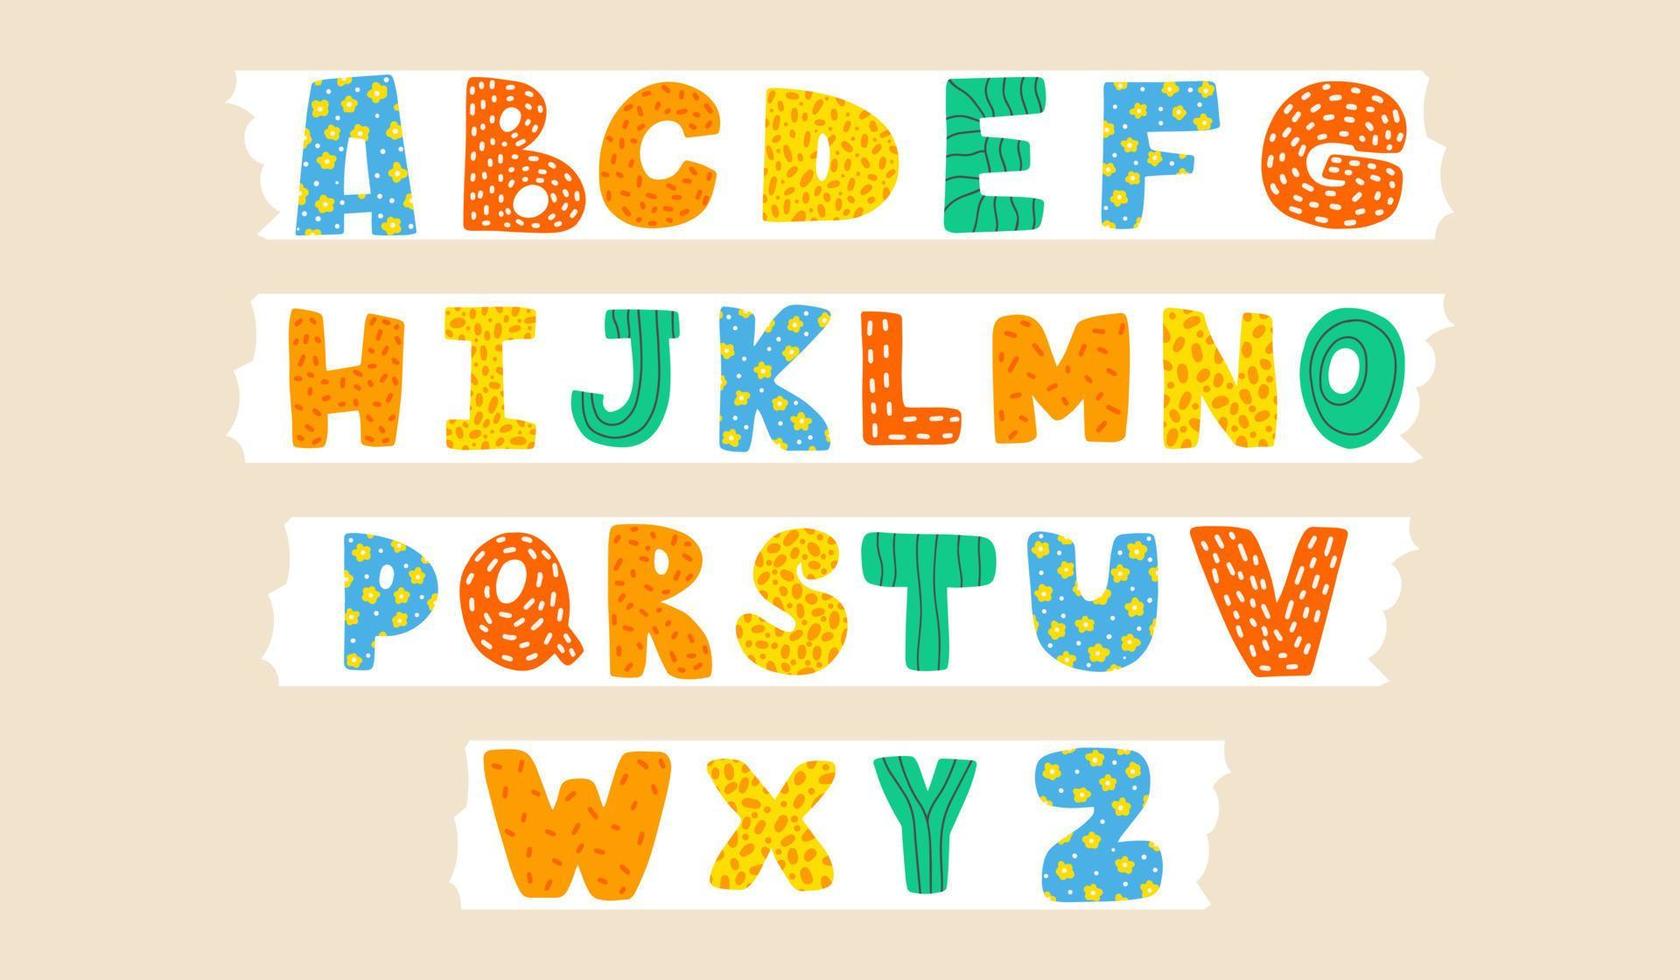 söt barnslig latin font eller Häftigt engelsk alfabet dekorerad med prickar och klottrar. hand dragen vektor illustration.